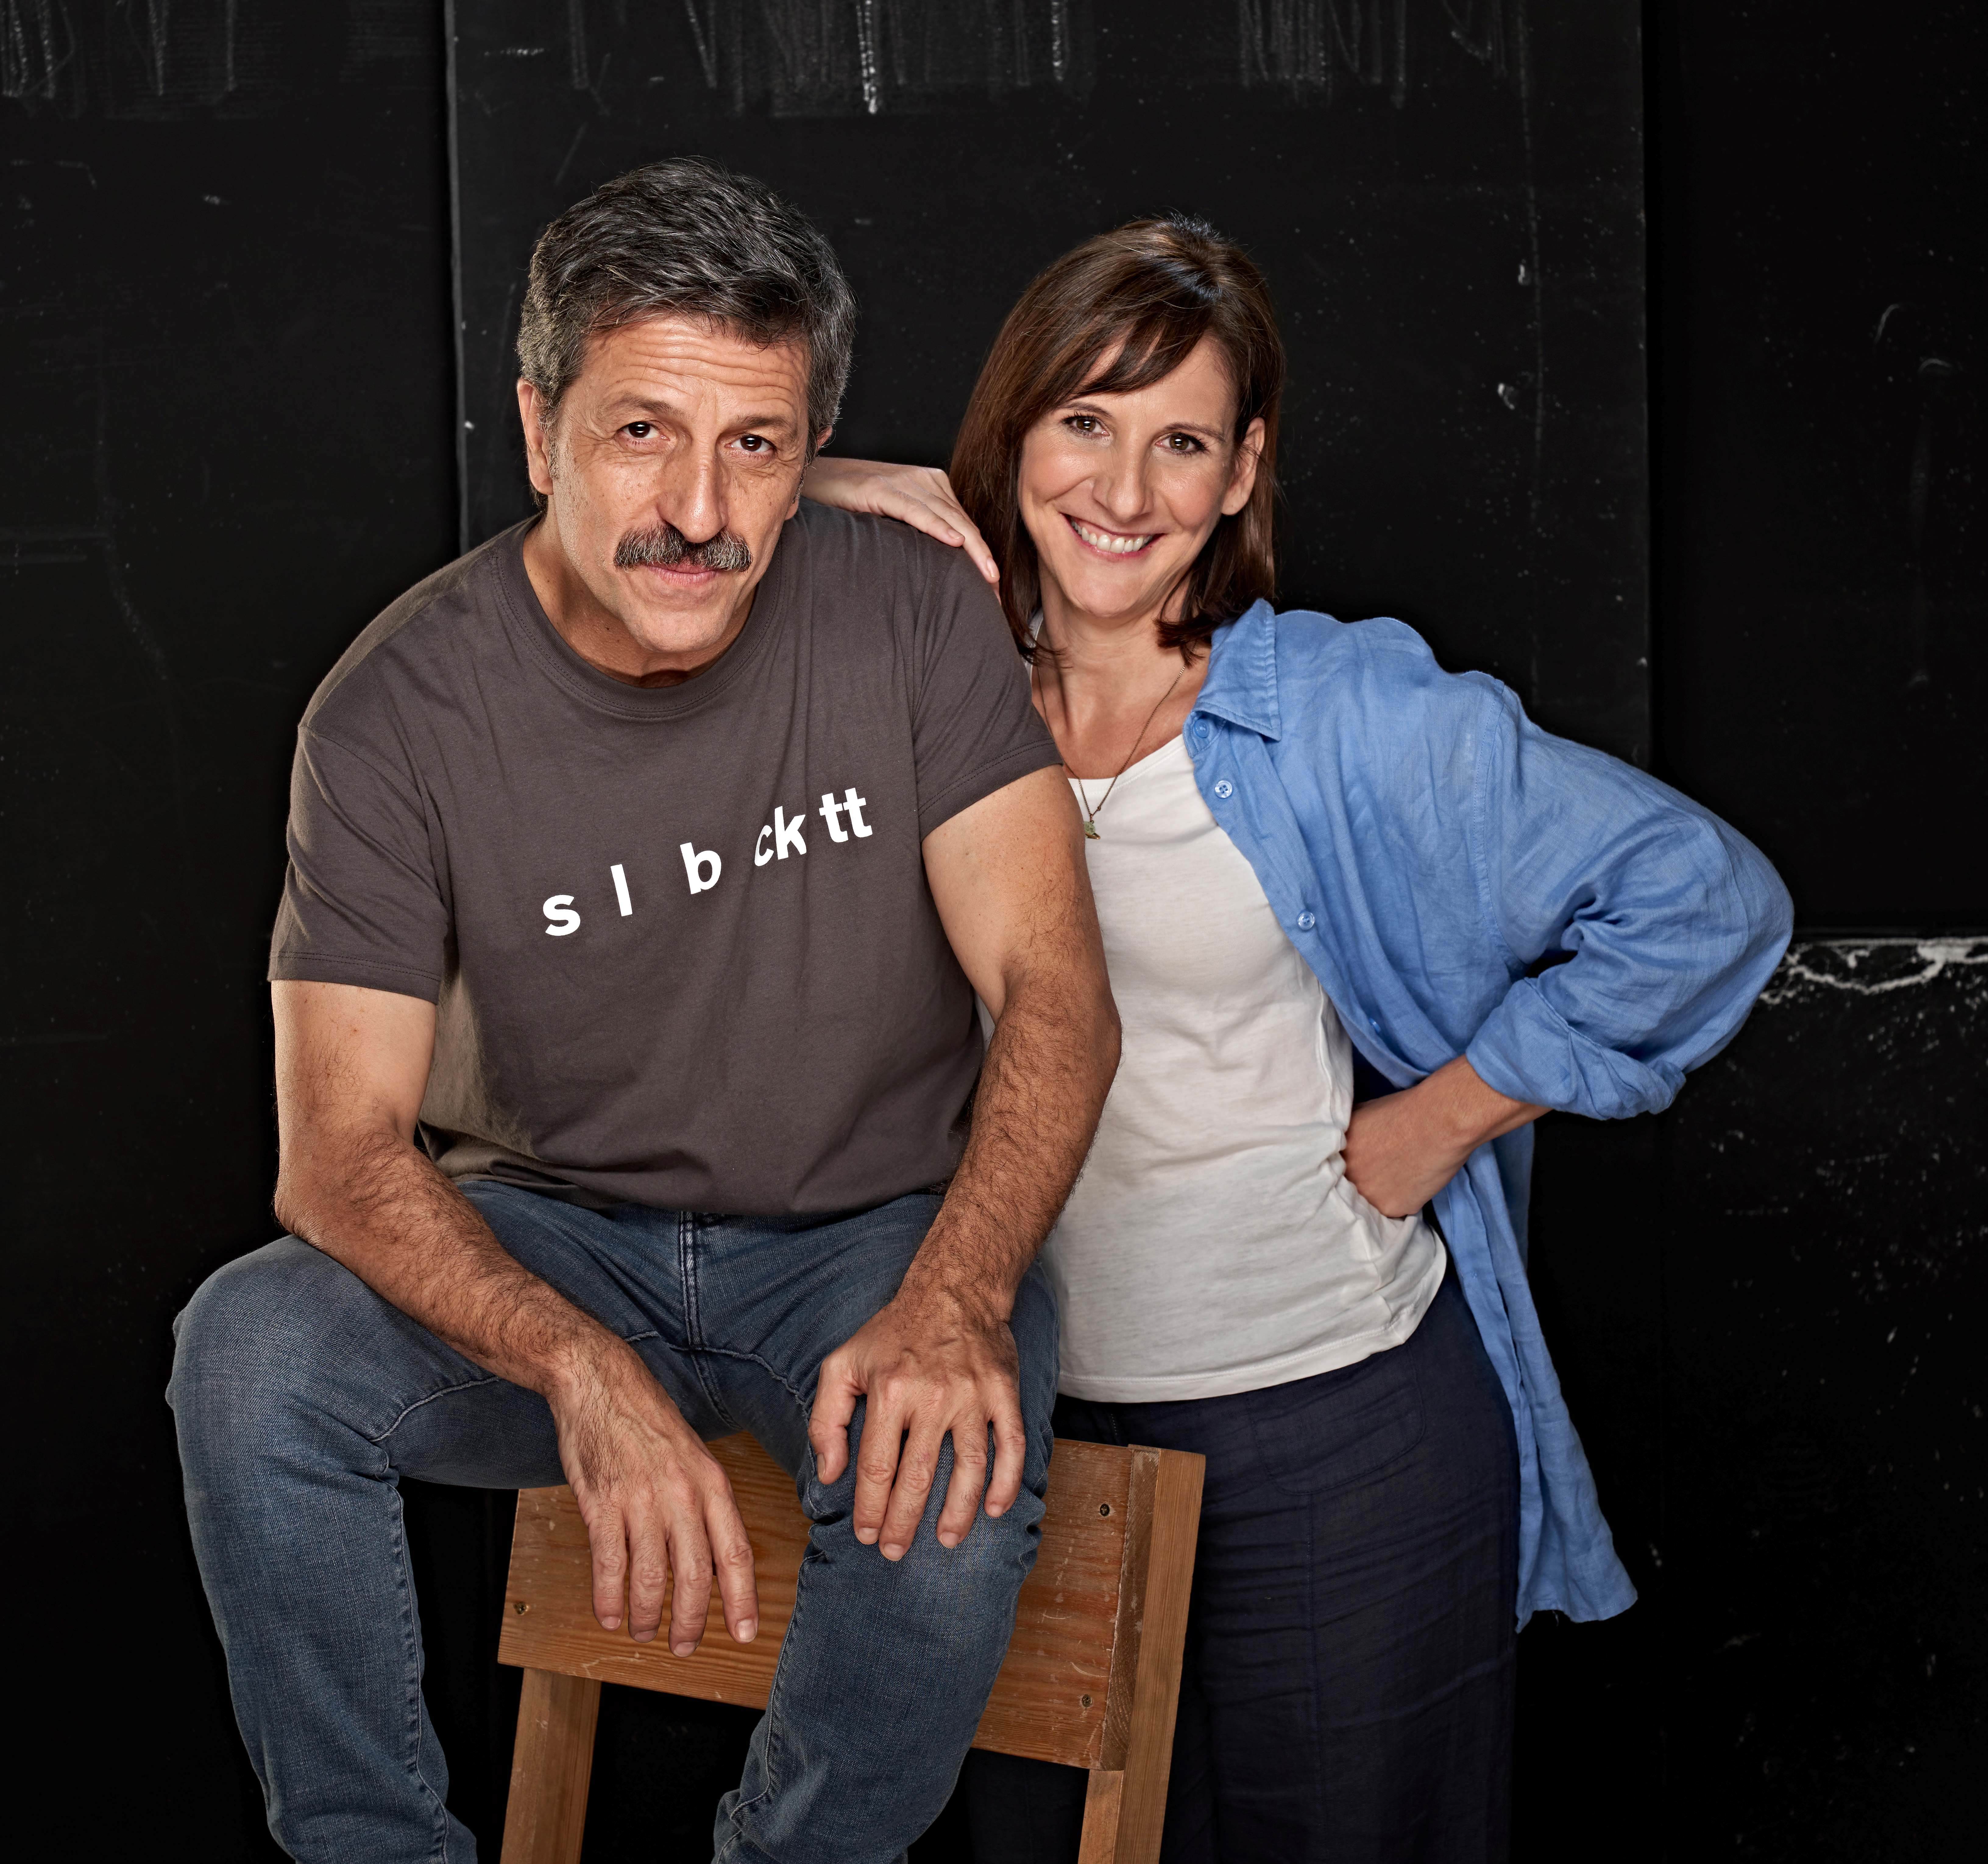 David Llorente y Malena Alterio, protagonistas de la obra.